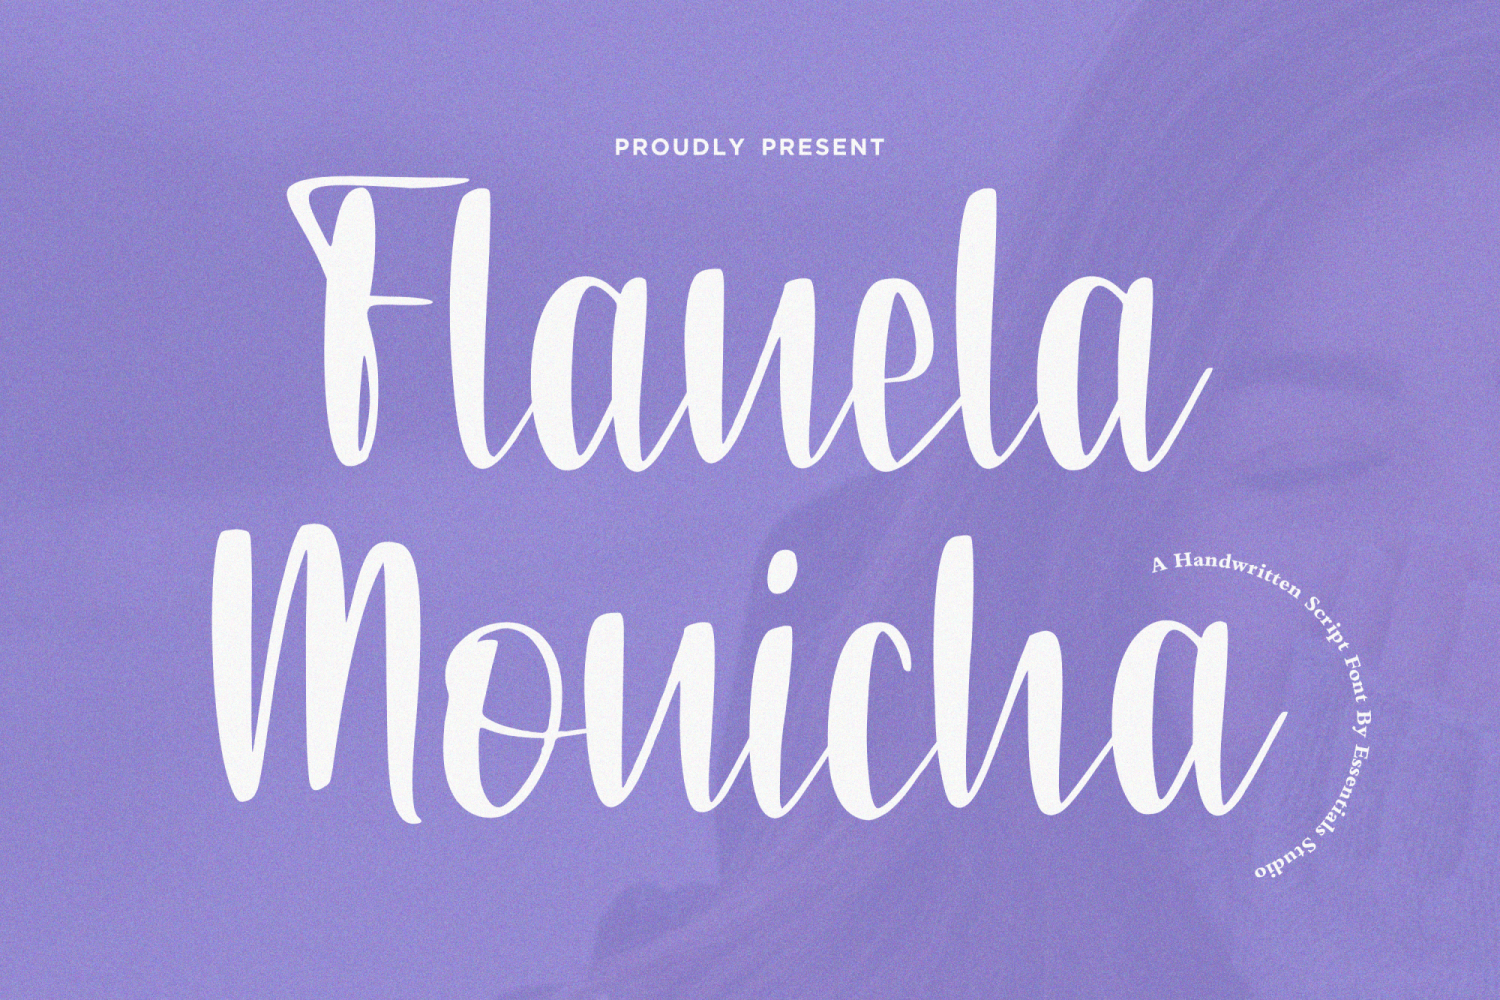 Flanela Monicha